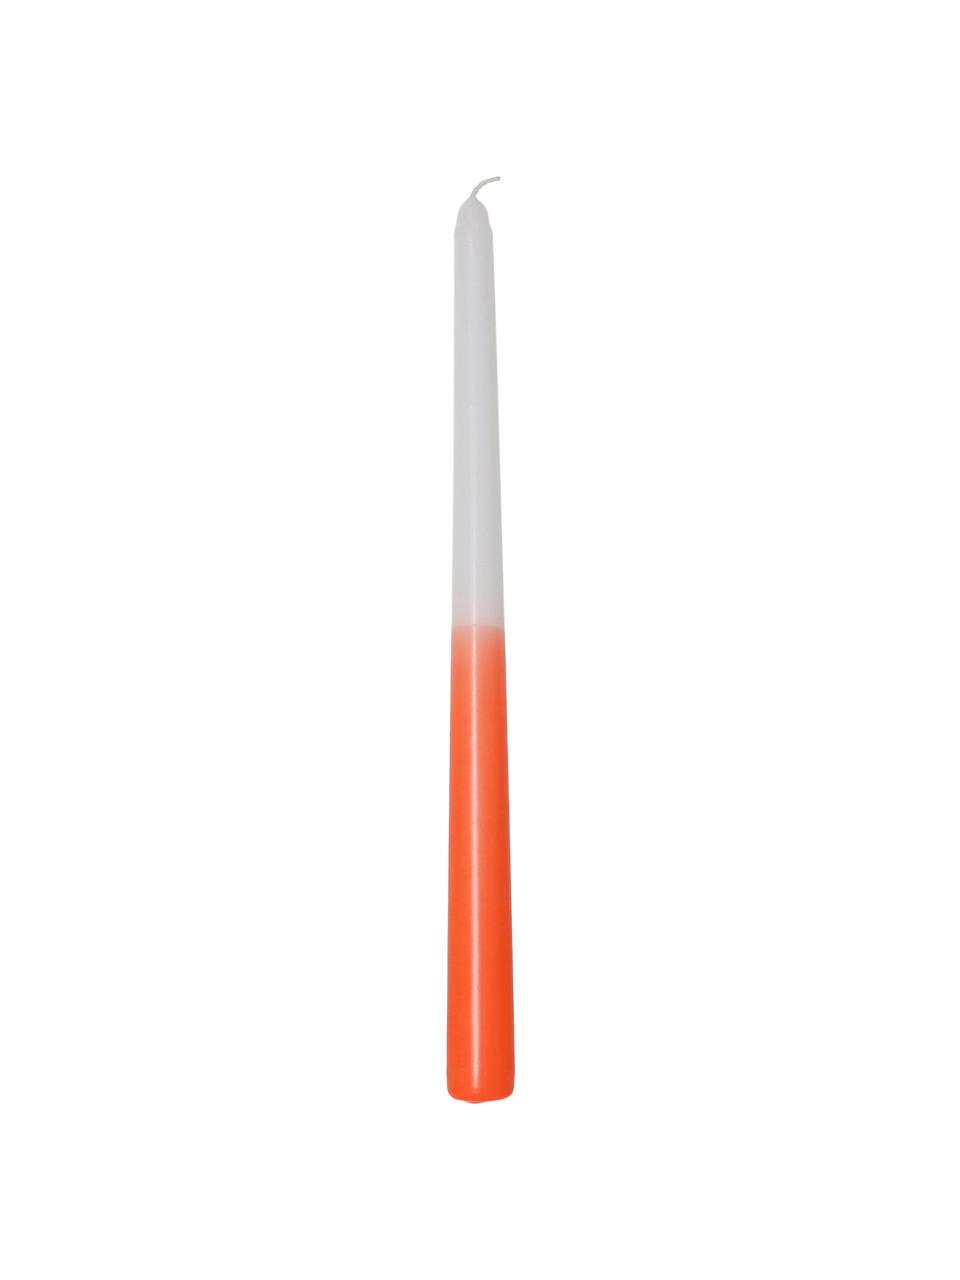 Stolní svíce Dubli, 4 ks, Vosk, Oranžová, bílá, Ø 2 cm, V 31 cm